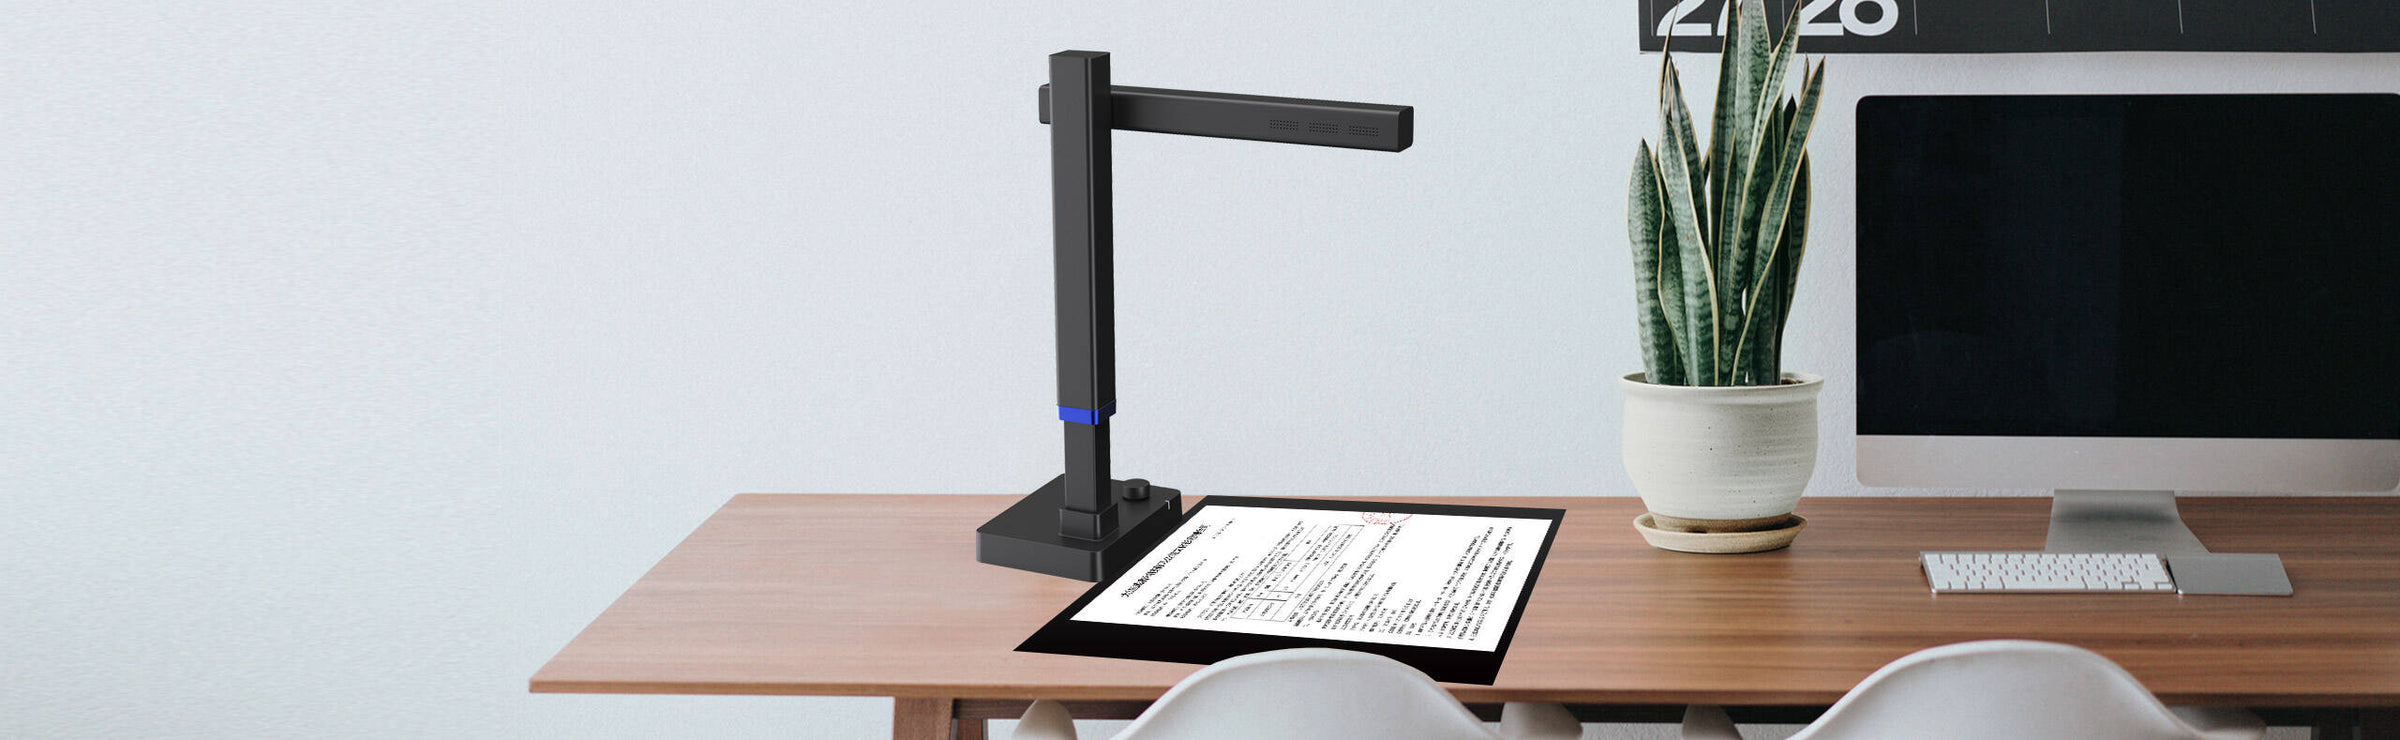 Czur 800 A3 Pro Dokumentenscanner auf den Schreibtisch, ideal für Bürobedarf